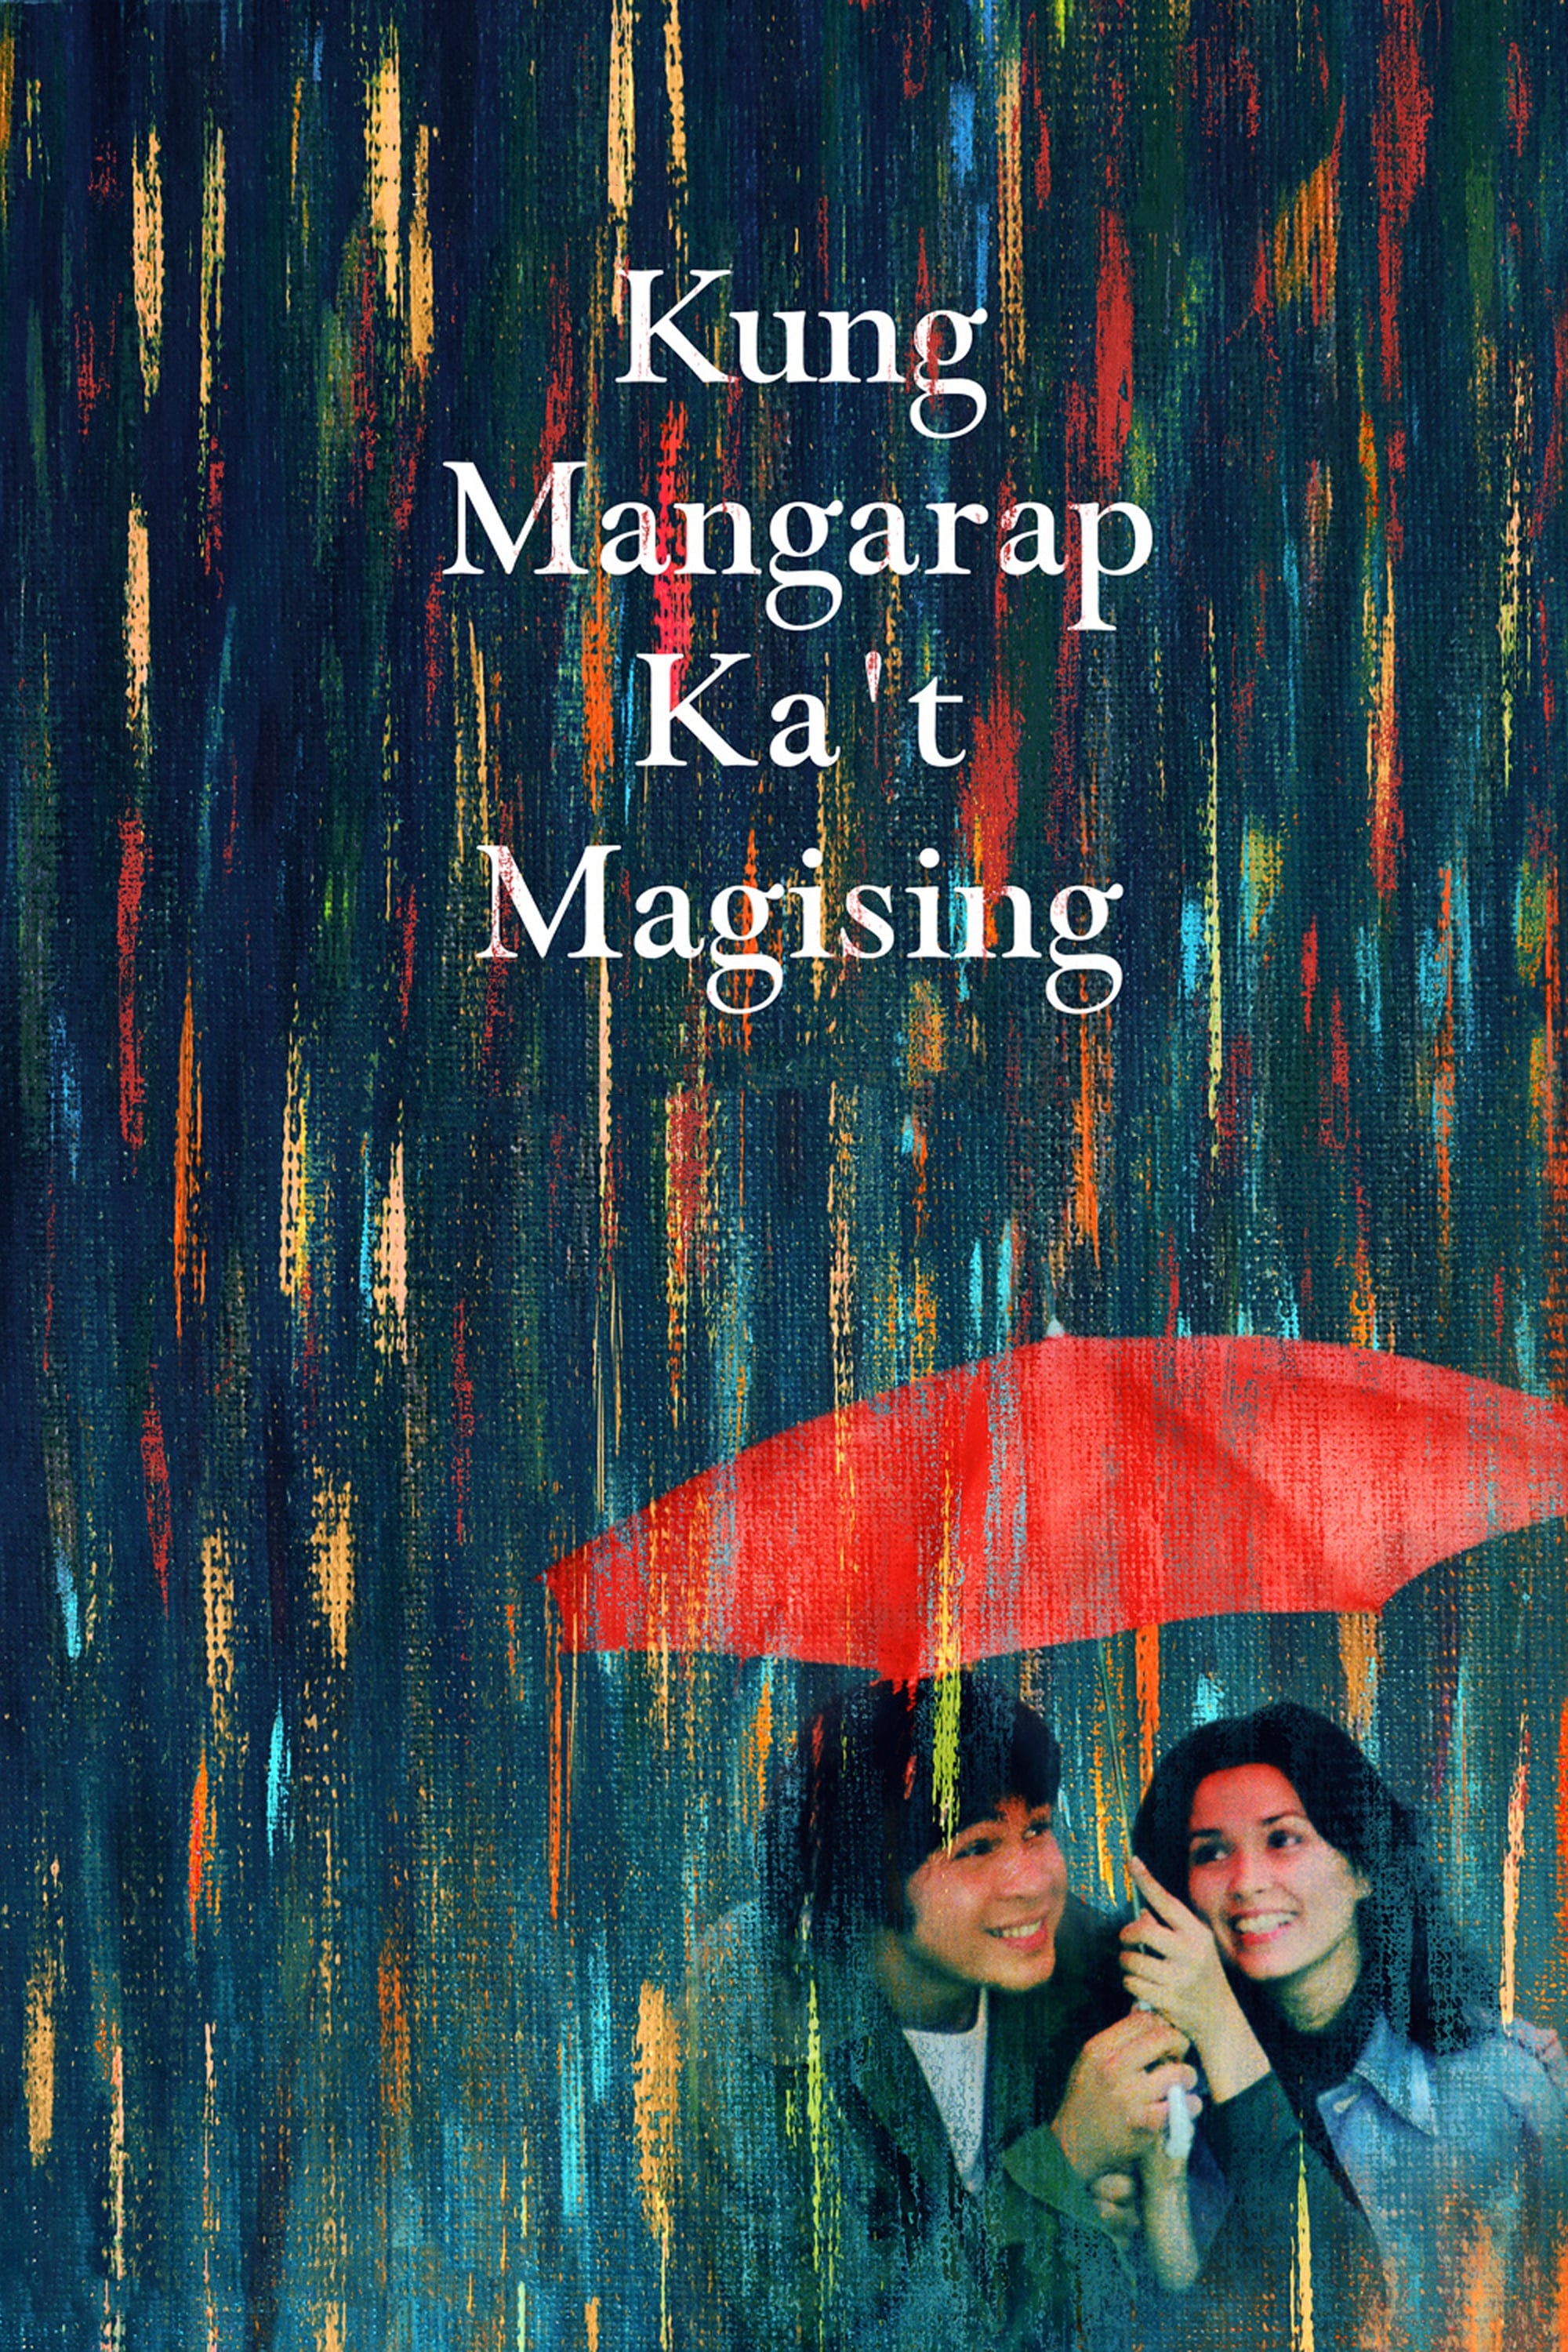 Kung mangarap ka't magising (1977) постер